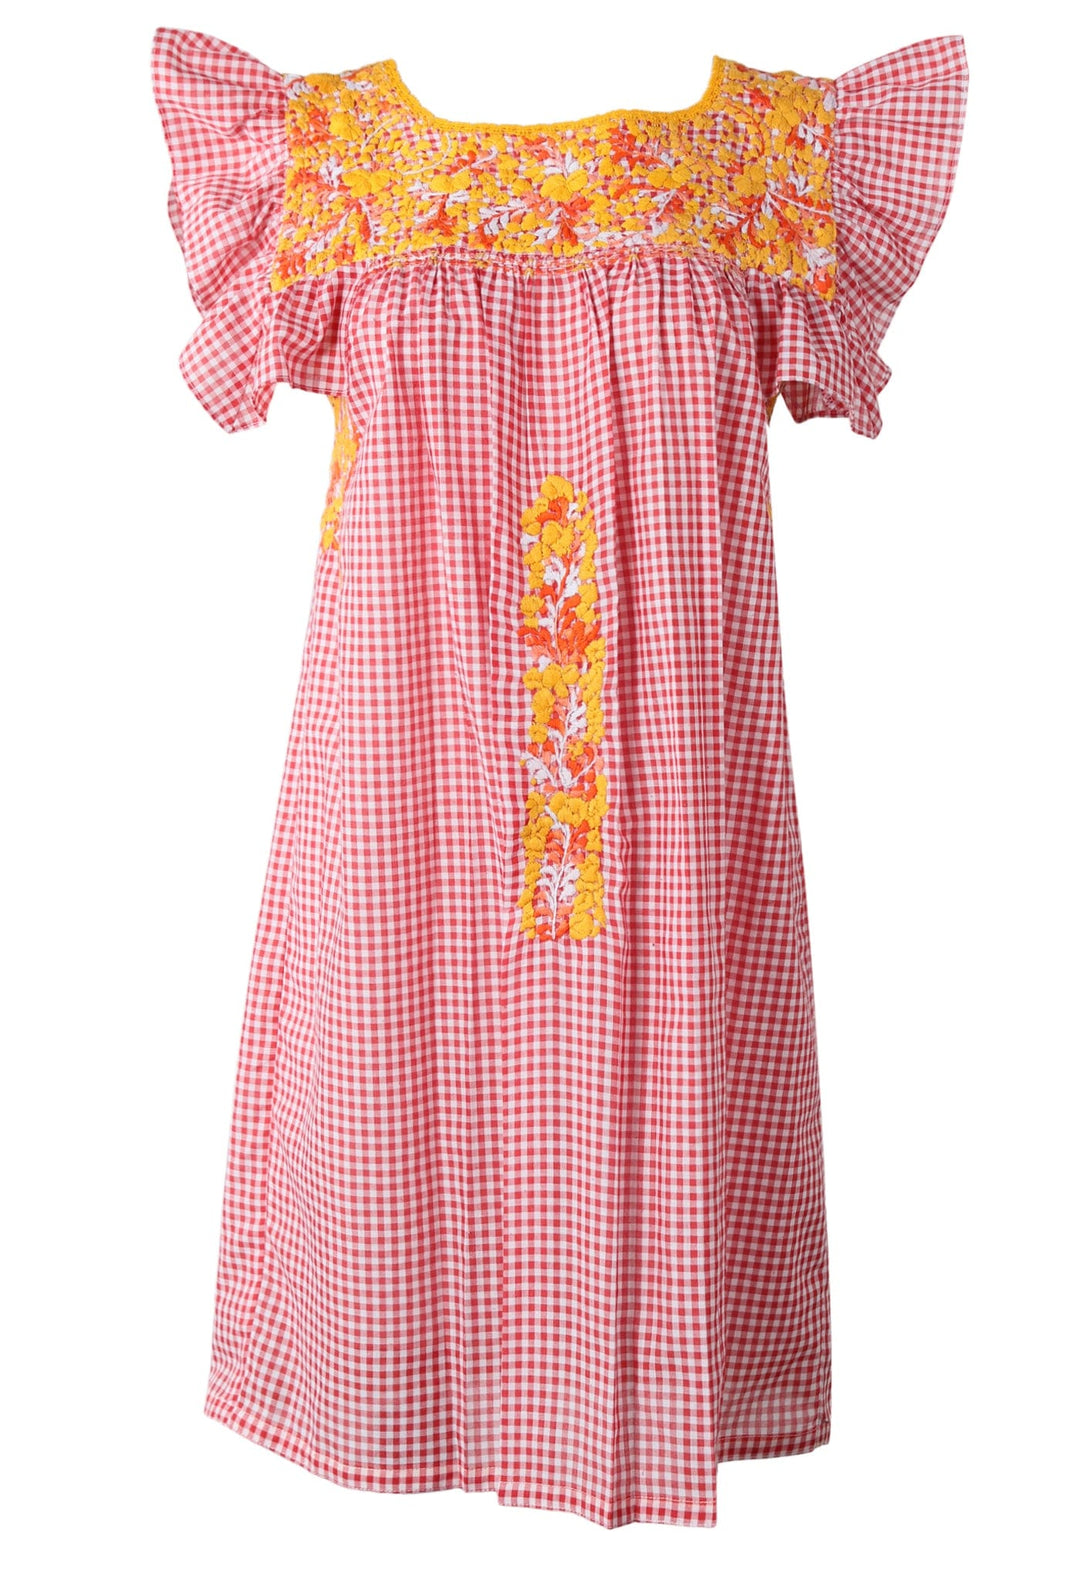 Soledad Short Dress Dress Soledad Corazon Amarillo y Naranja Brillante